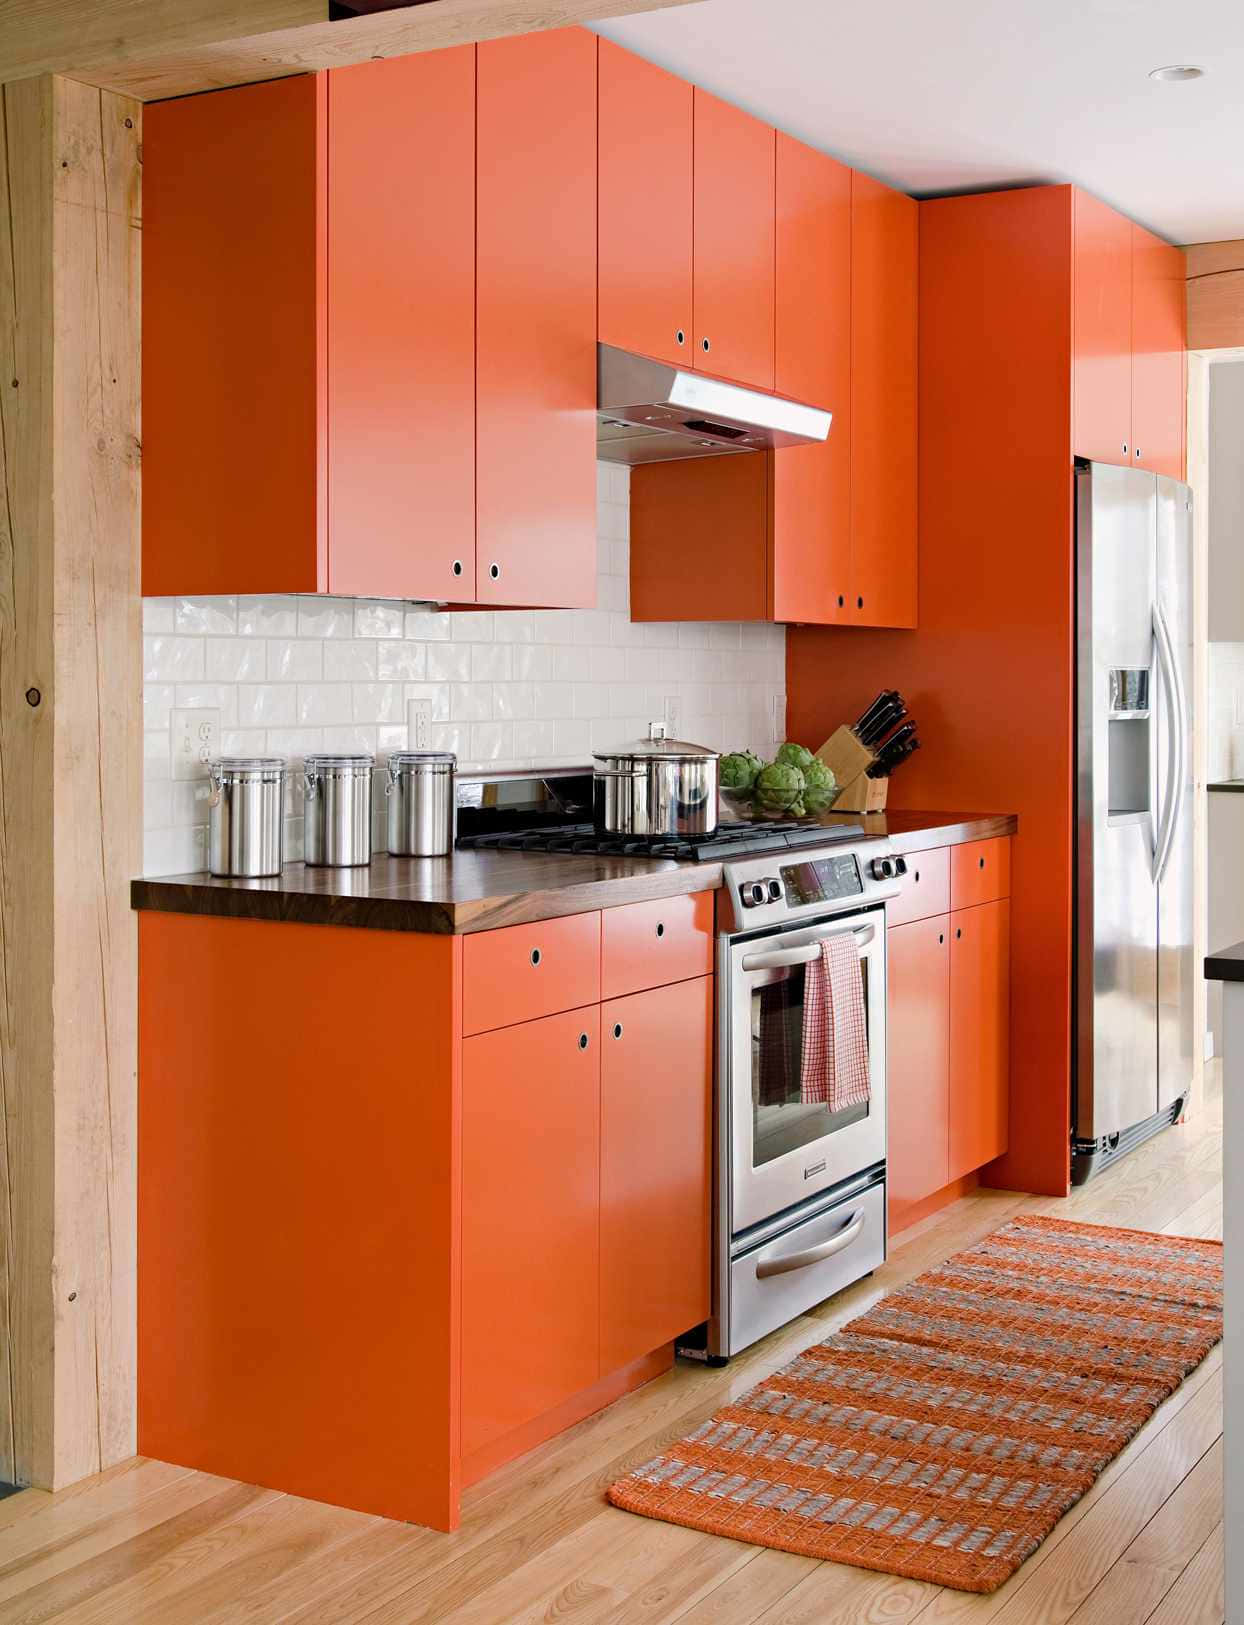 Eineküche Mit Orangefarbenen Schränken.